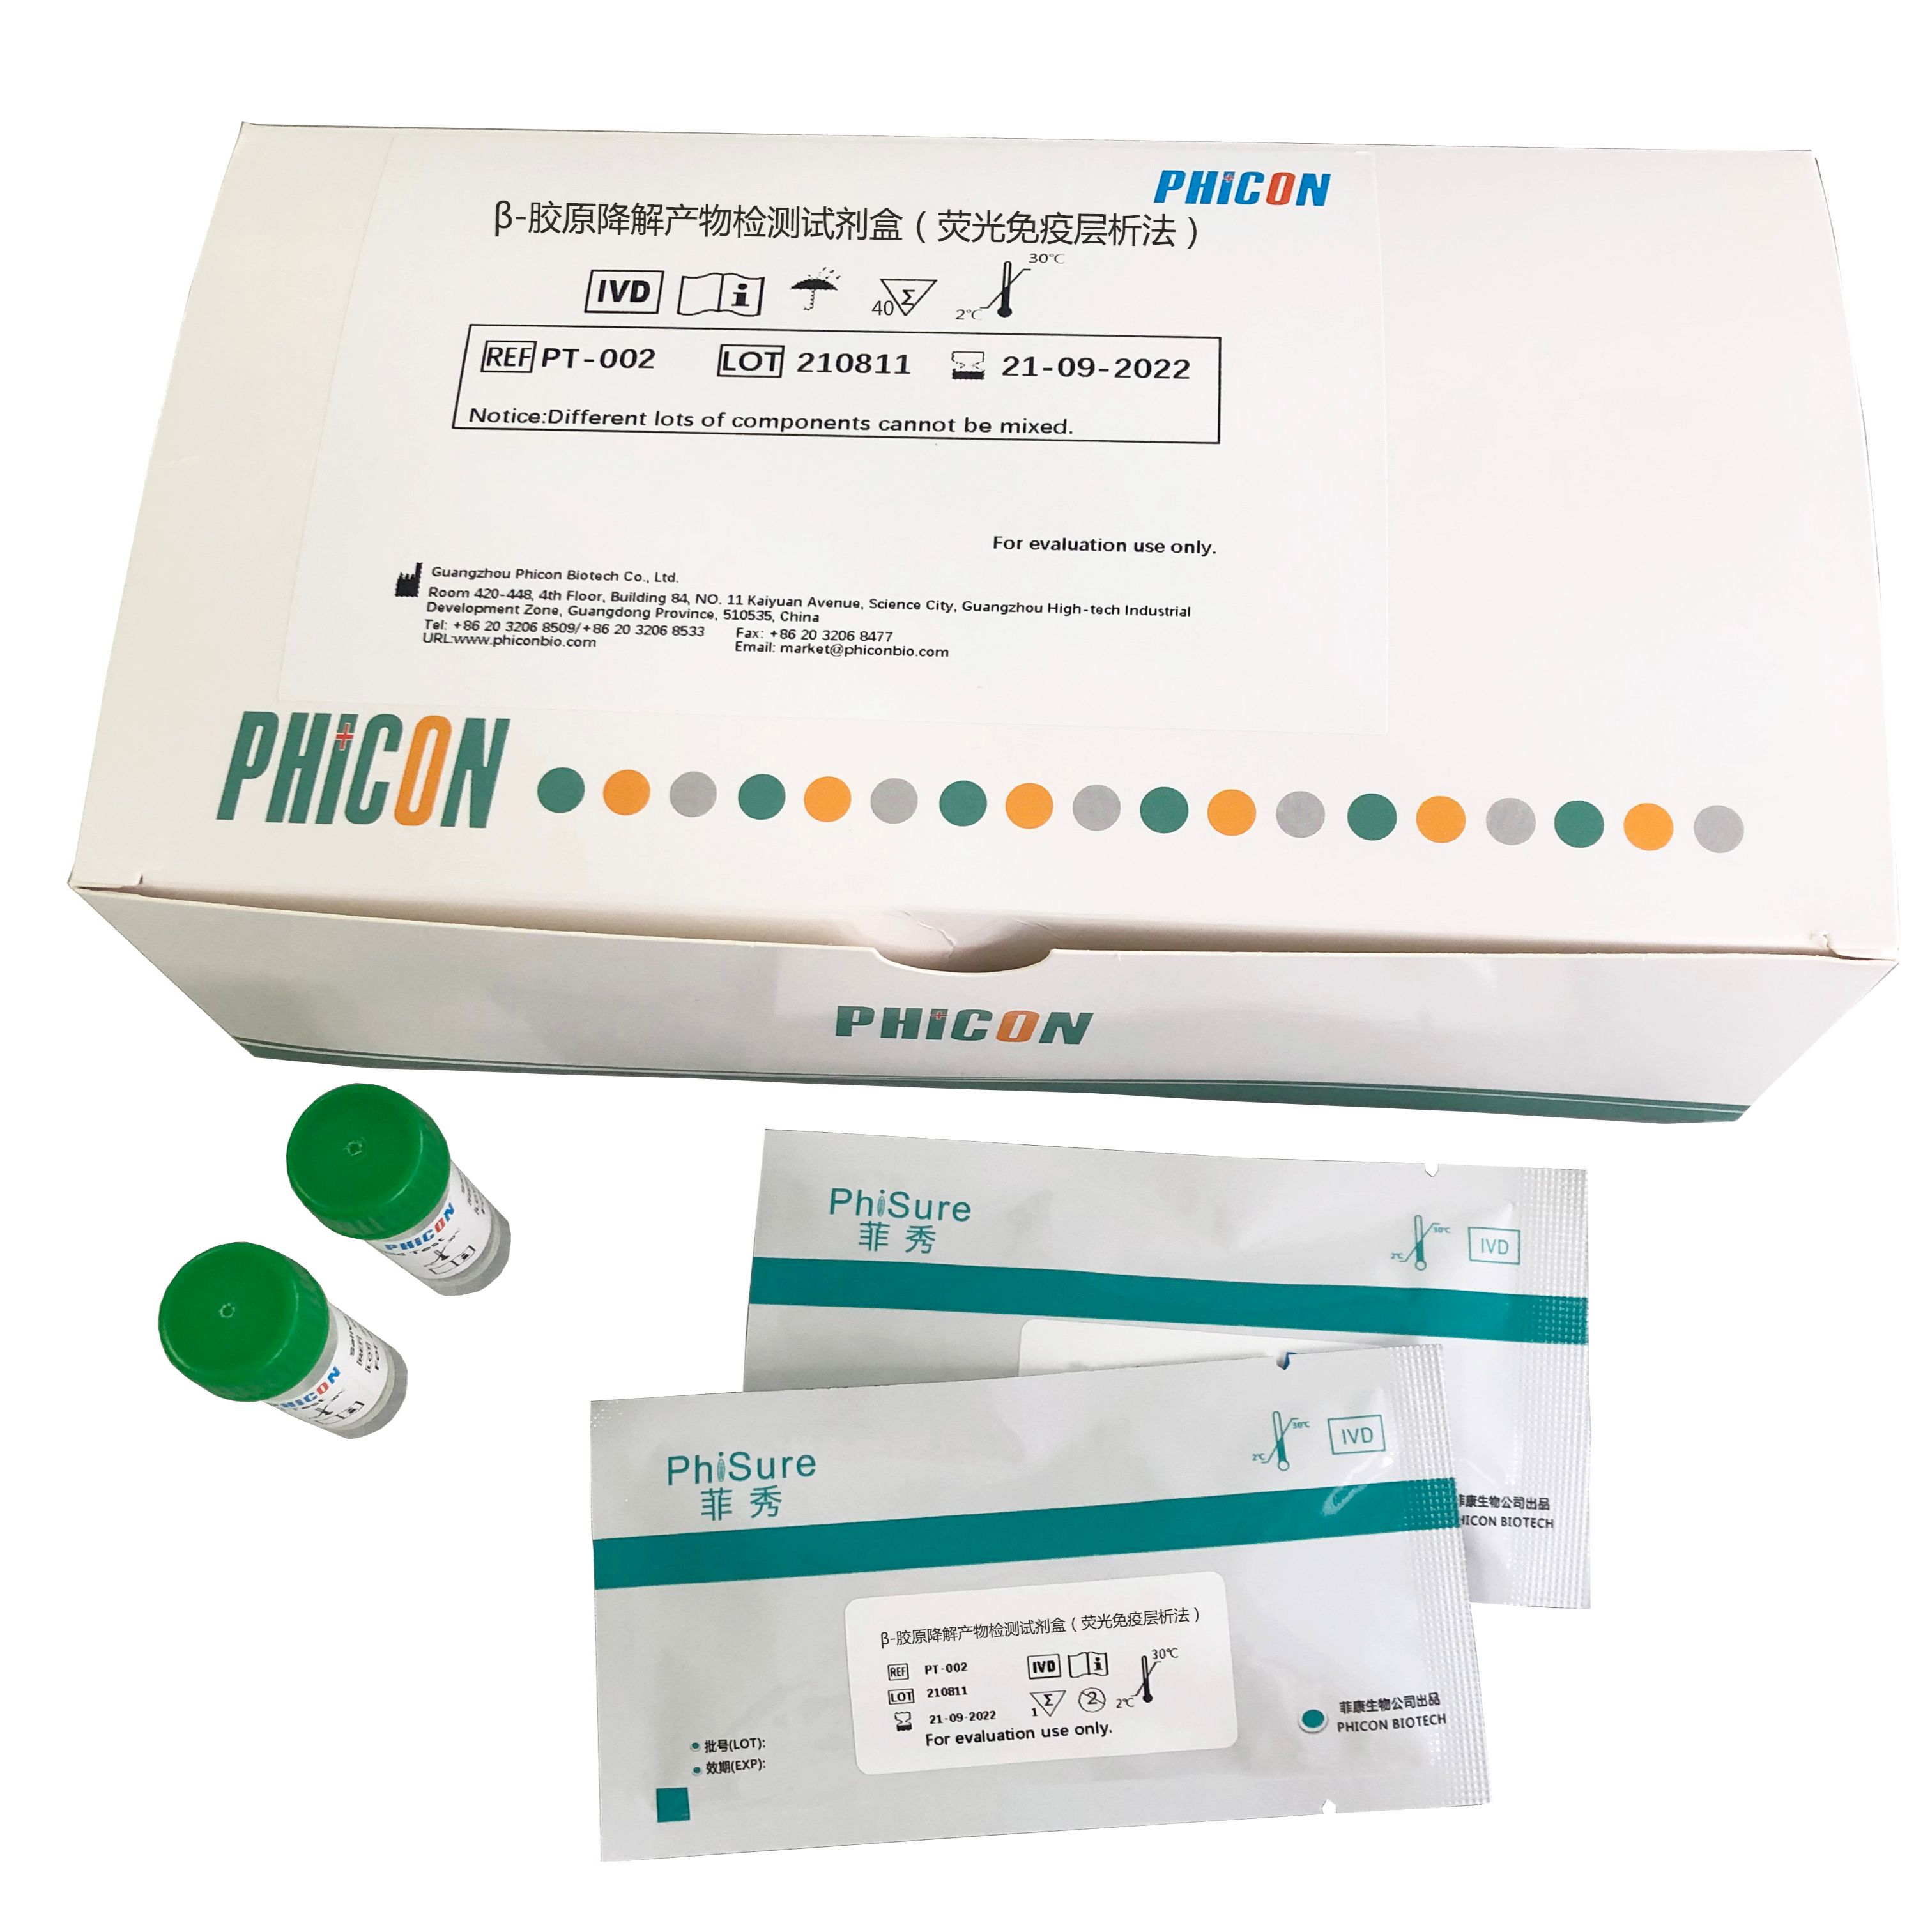 β-胶原降解产物检测试剂盒（荧光免疫层析法）